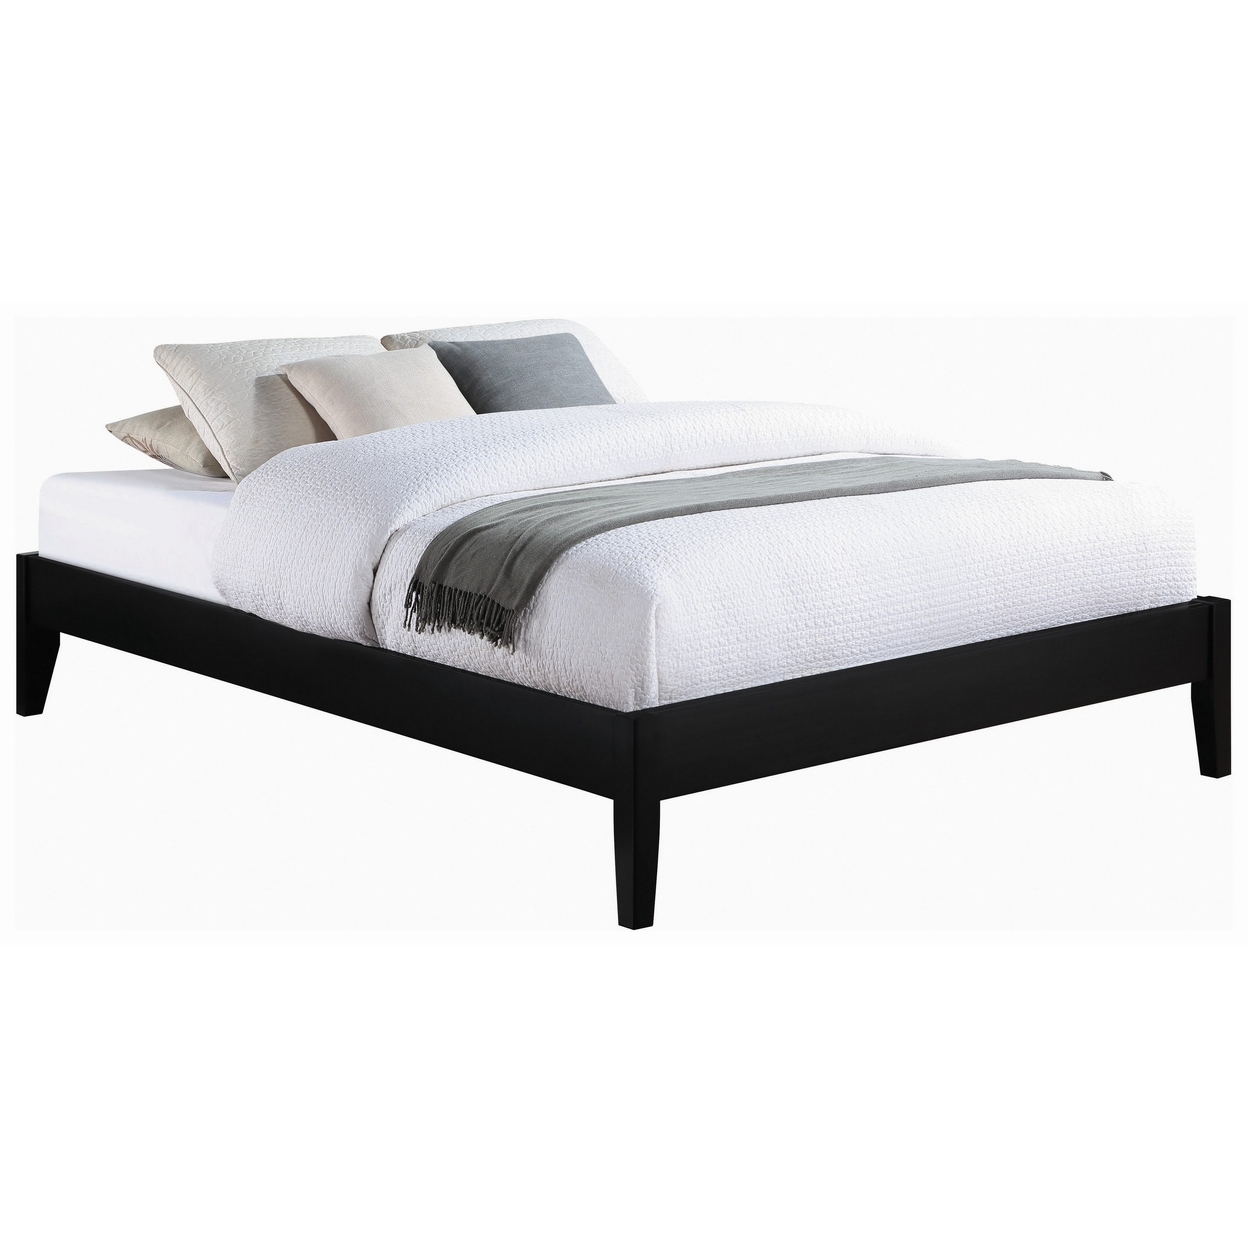 Cavi Modern Low Profile Platform California King Bed, Panel Sides, Black- Saltoro Sherpi